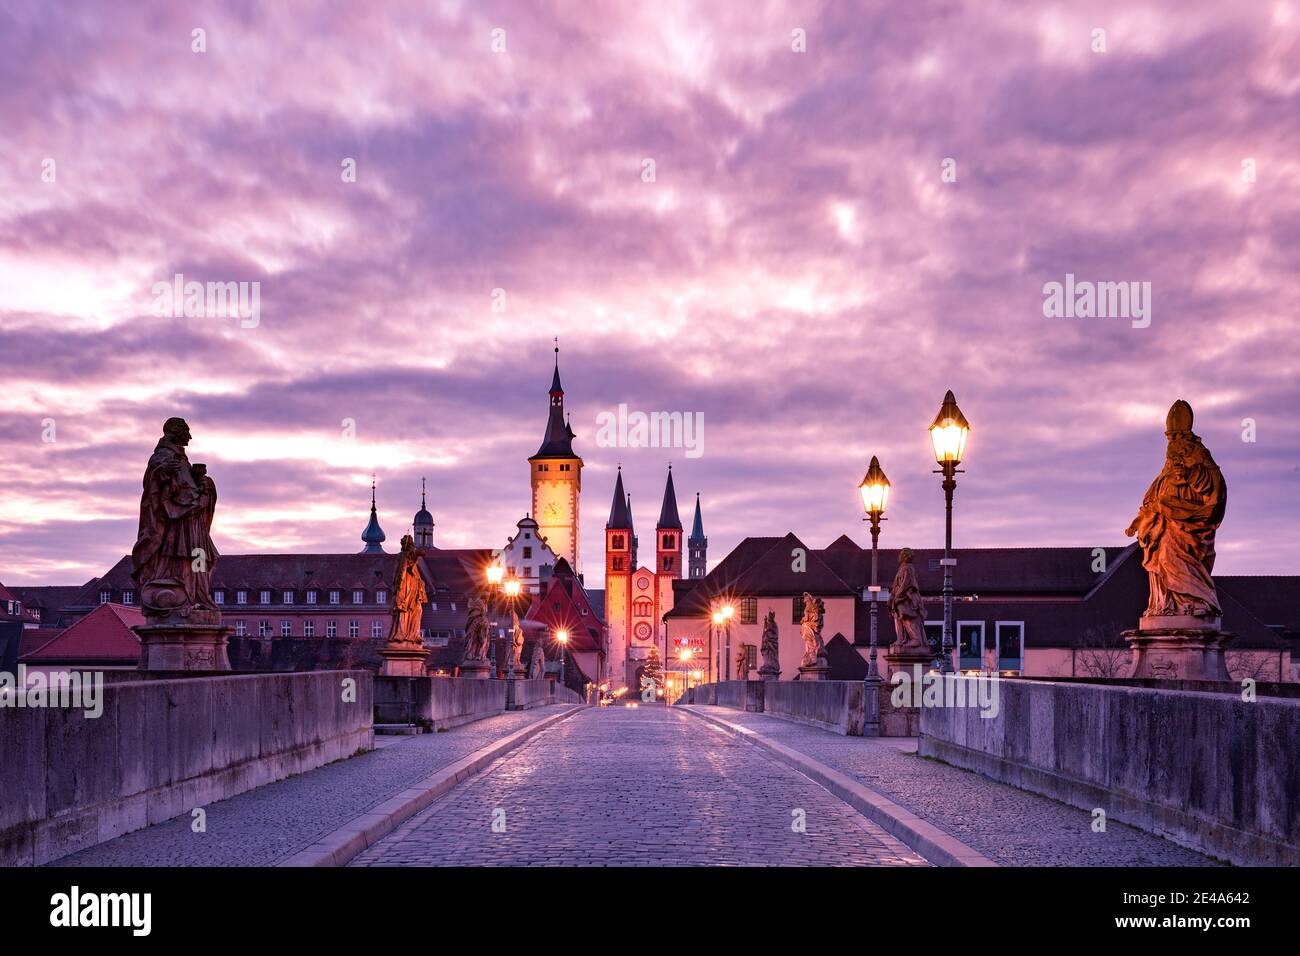 Alte Hauptbrücke, Alte Mainbrücke mit Heiligenstatuen, Dom und Rathaus in der Altstadt bei rosa Sonnenuntergang, Würzburg, Bayern, Deutschland Stockfoto